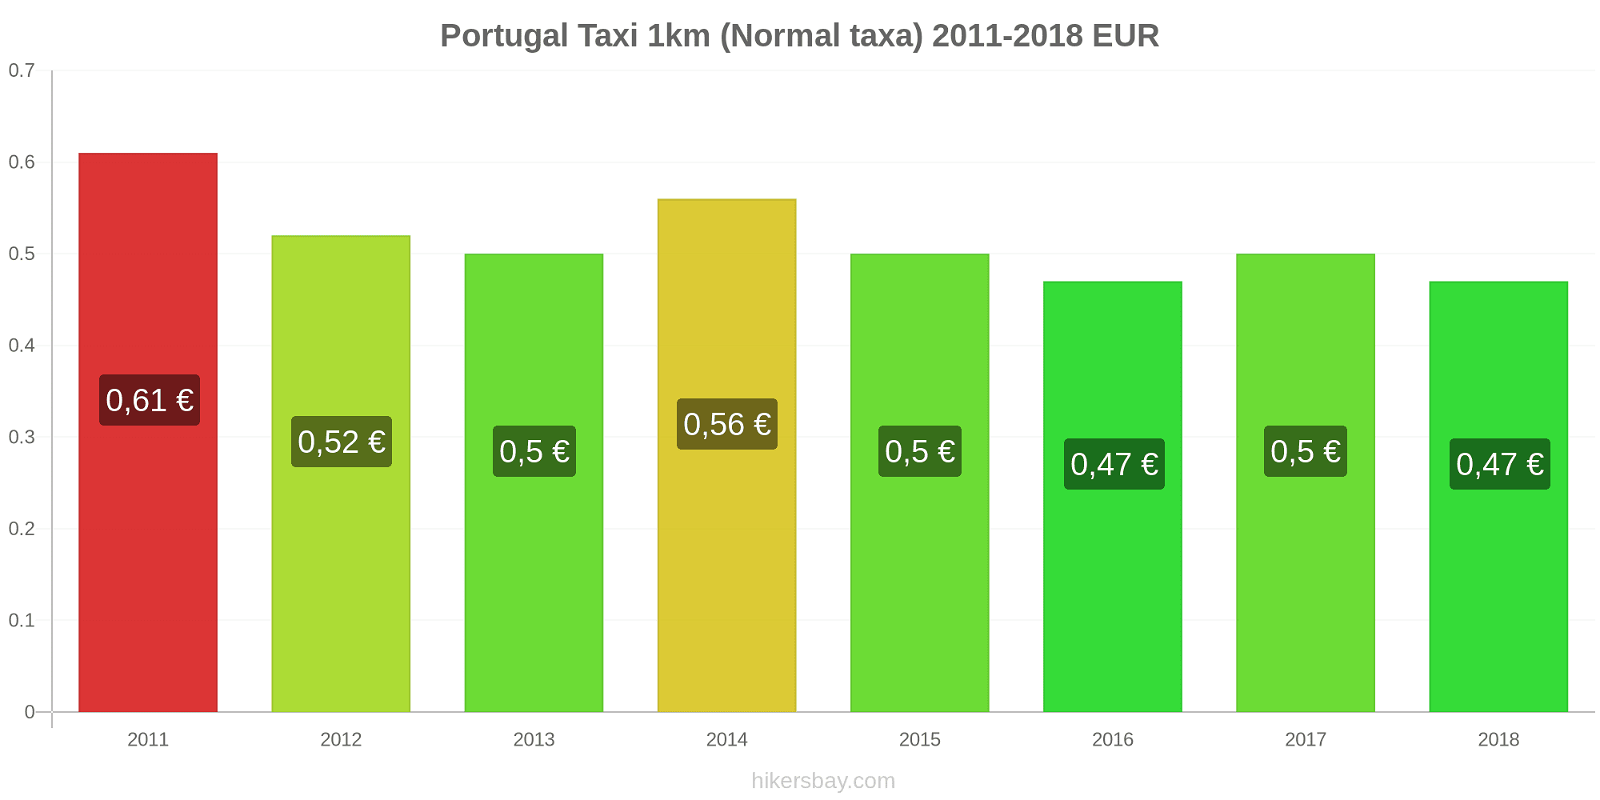 Portugal prisändringar Taxi 1km (Normal taxa) hikersbay.com